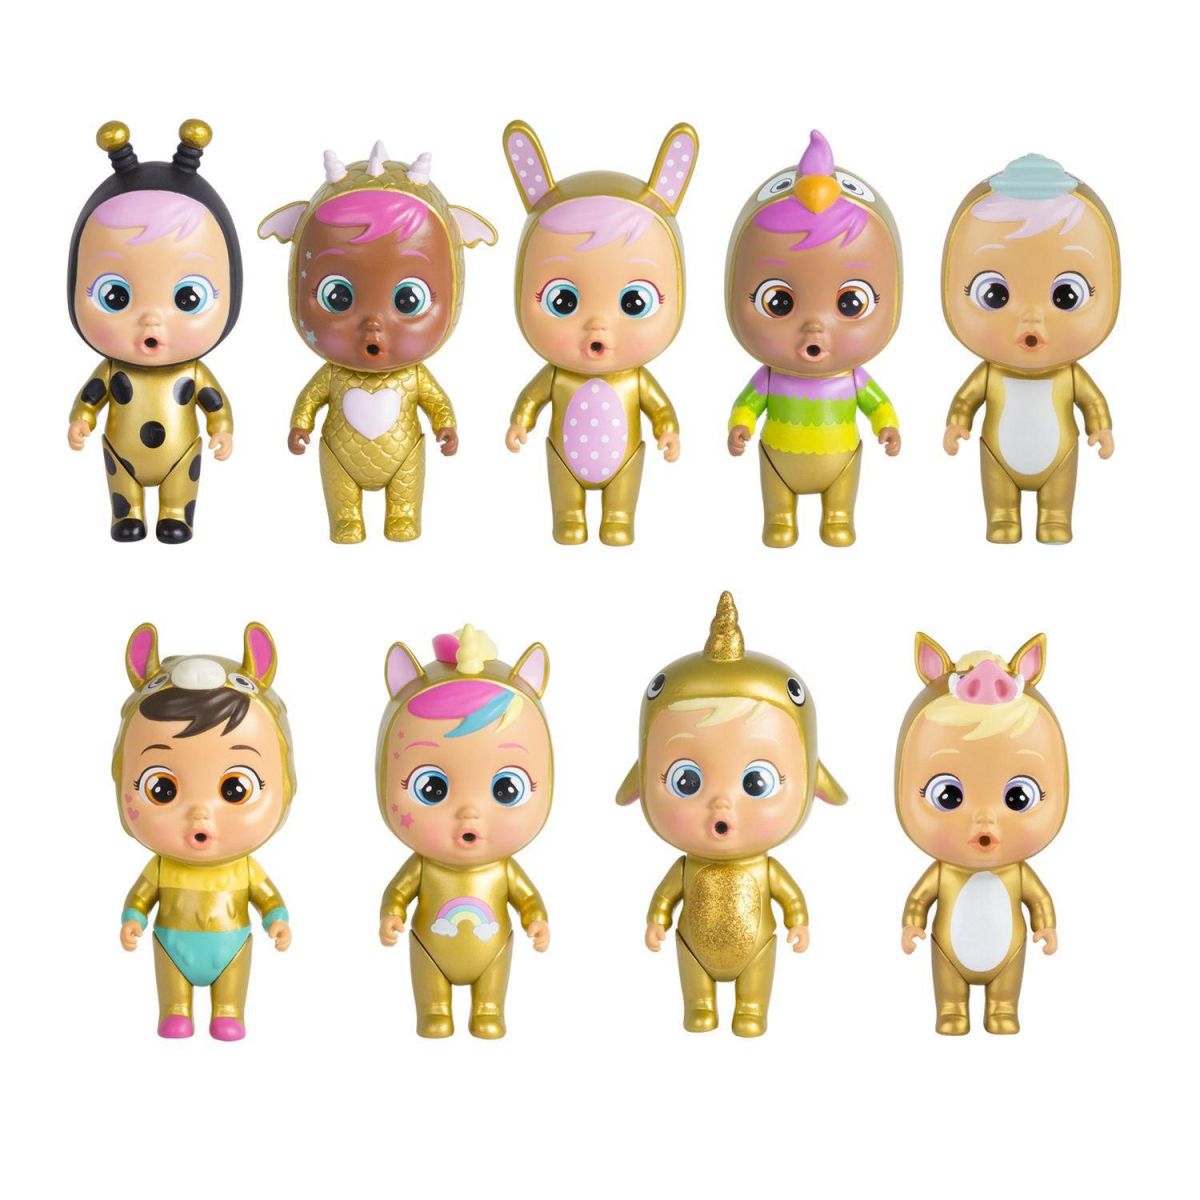 Кукла IMC Toys Cry Babies Magic Tears GOLDEN EDITION Плачущий младенец с домиком и аксессуарами 7 видов